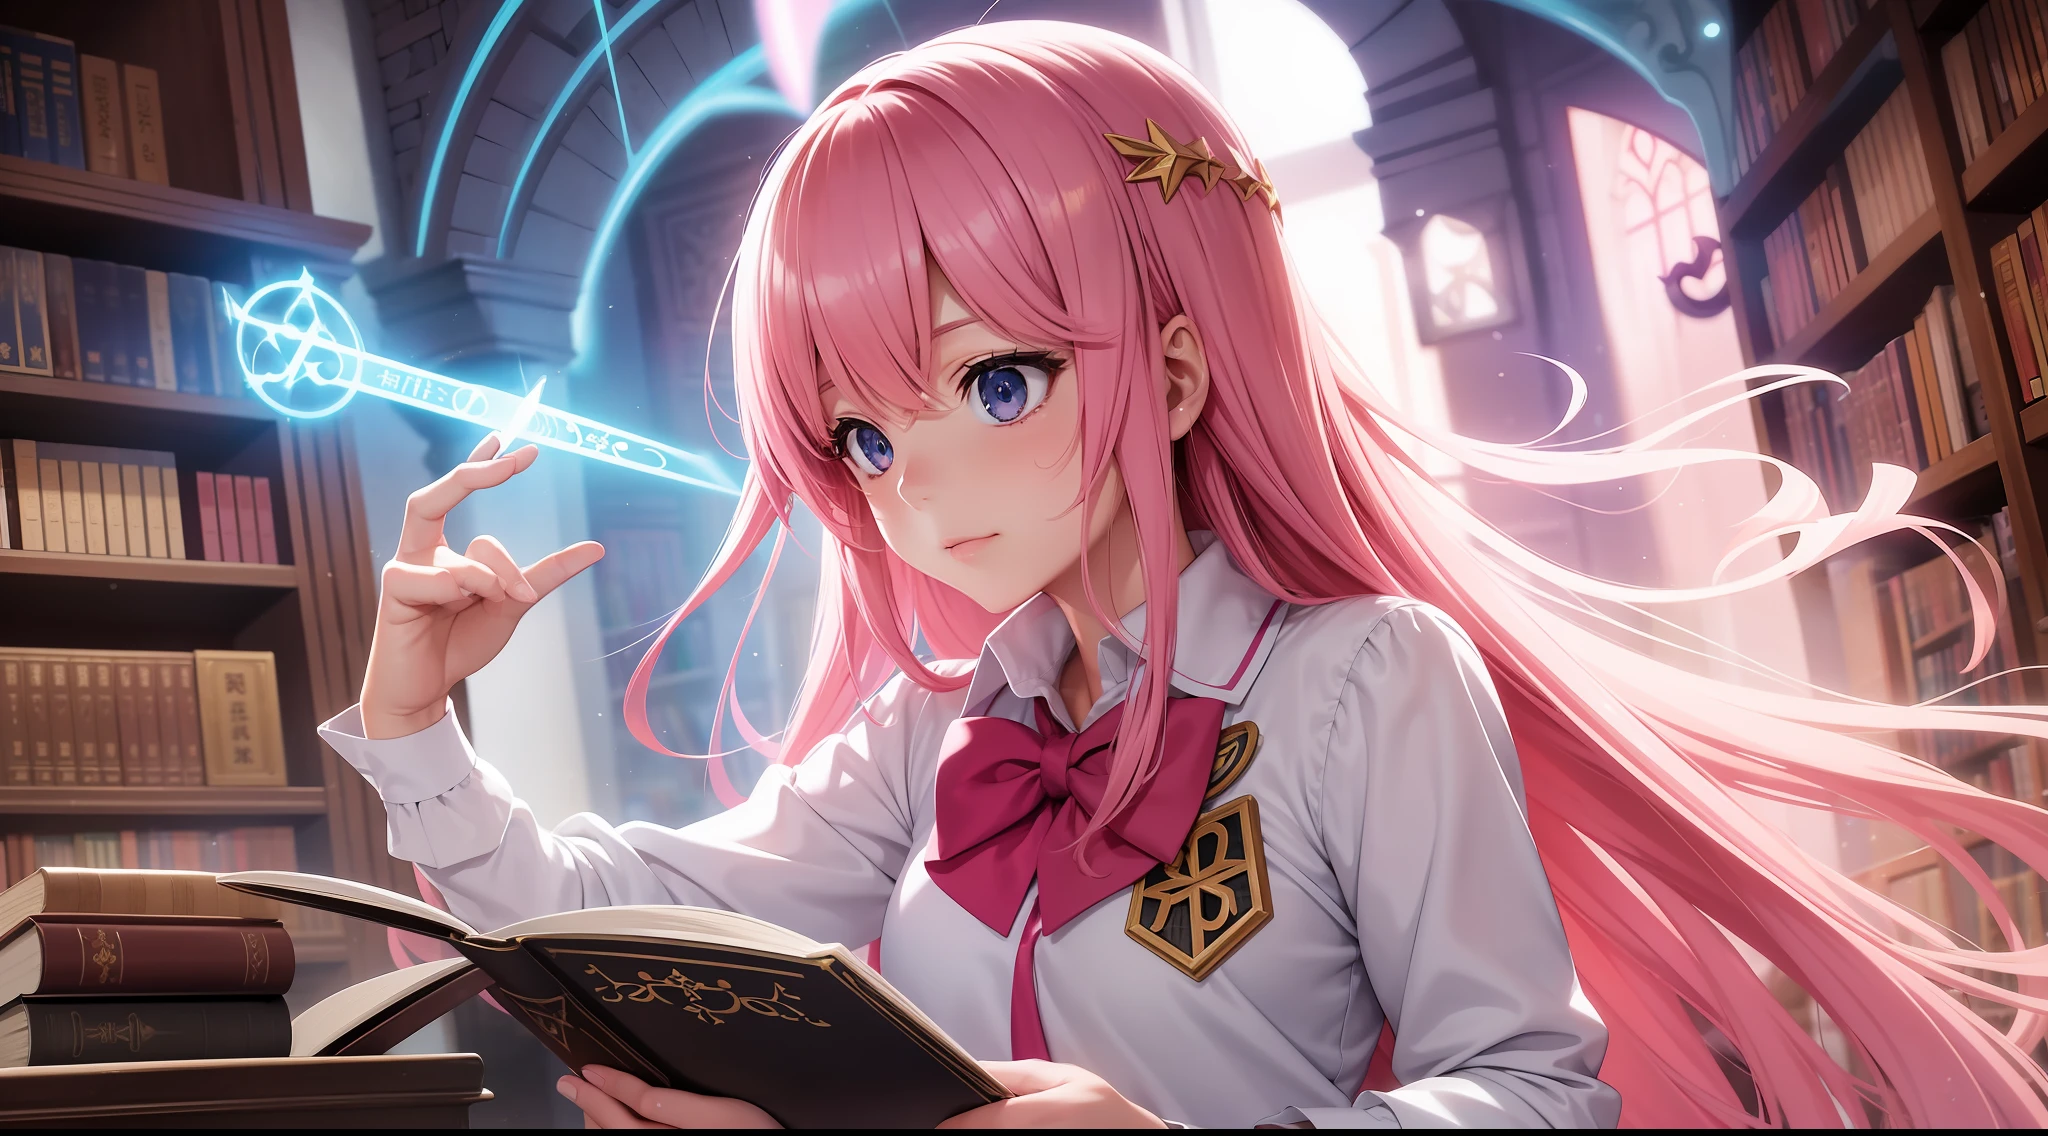 "Uma garota fotorrealista de alta qualidade estilo anime com cabelo rosa, Vestido com um traje mágico com runas brilhantes, Lançando feitiços em uma biblioteca mágica cheia de tomos antigos e artefatos místicos, tirada com uma Câmera Encantada Avançada e utilizando uma Lente Etérea